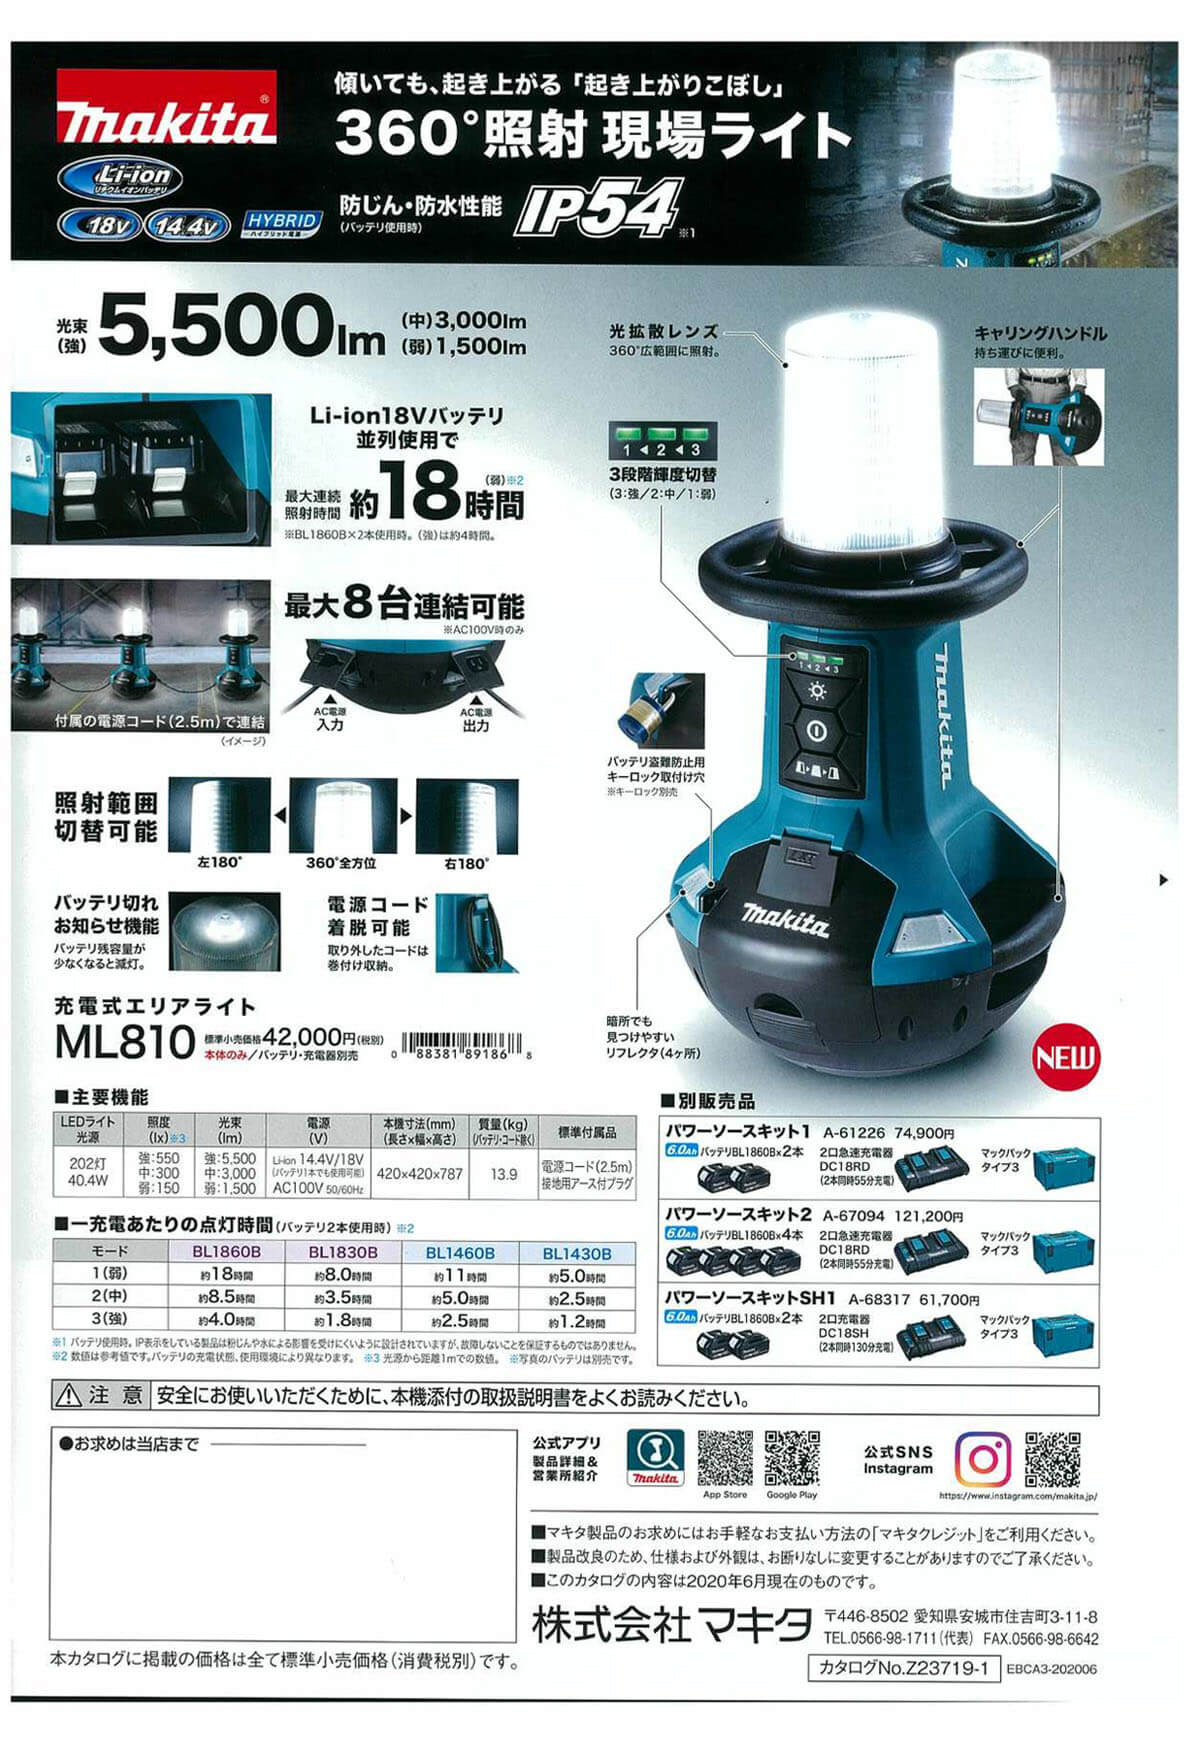 マキタ ML810 充電式エリアライト(本体のみ) ウエダ金物【公式サイト】